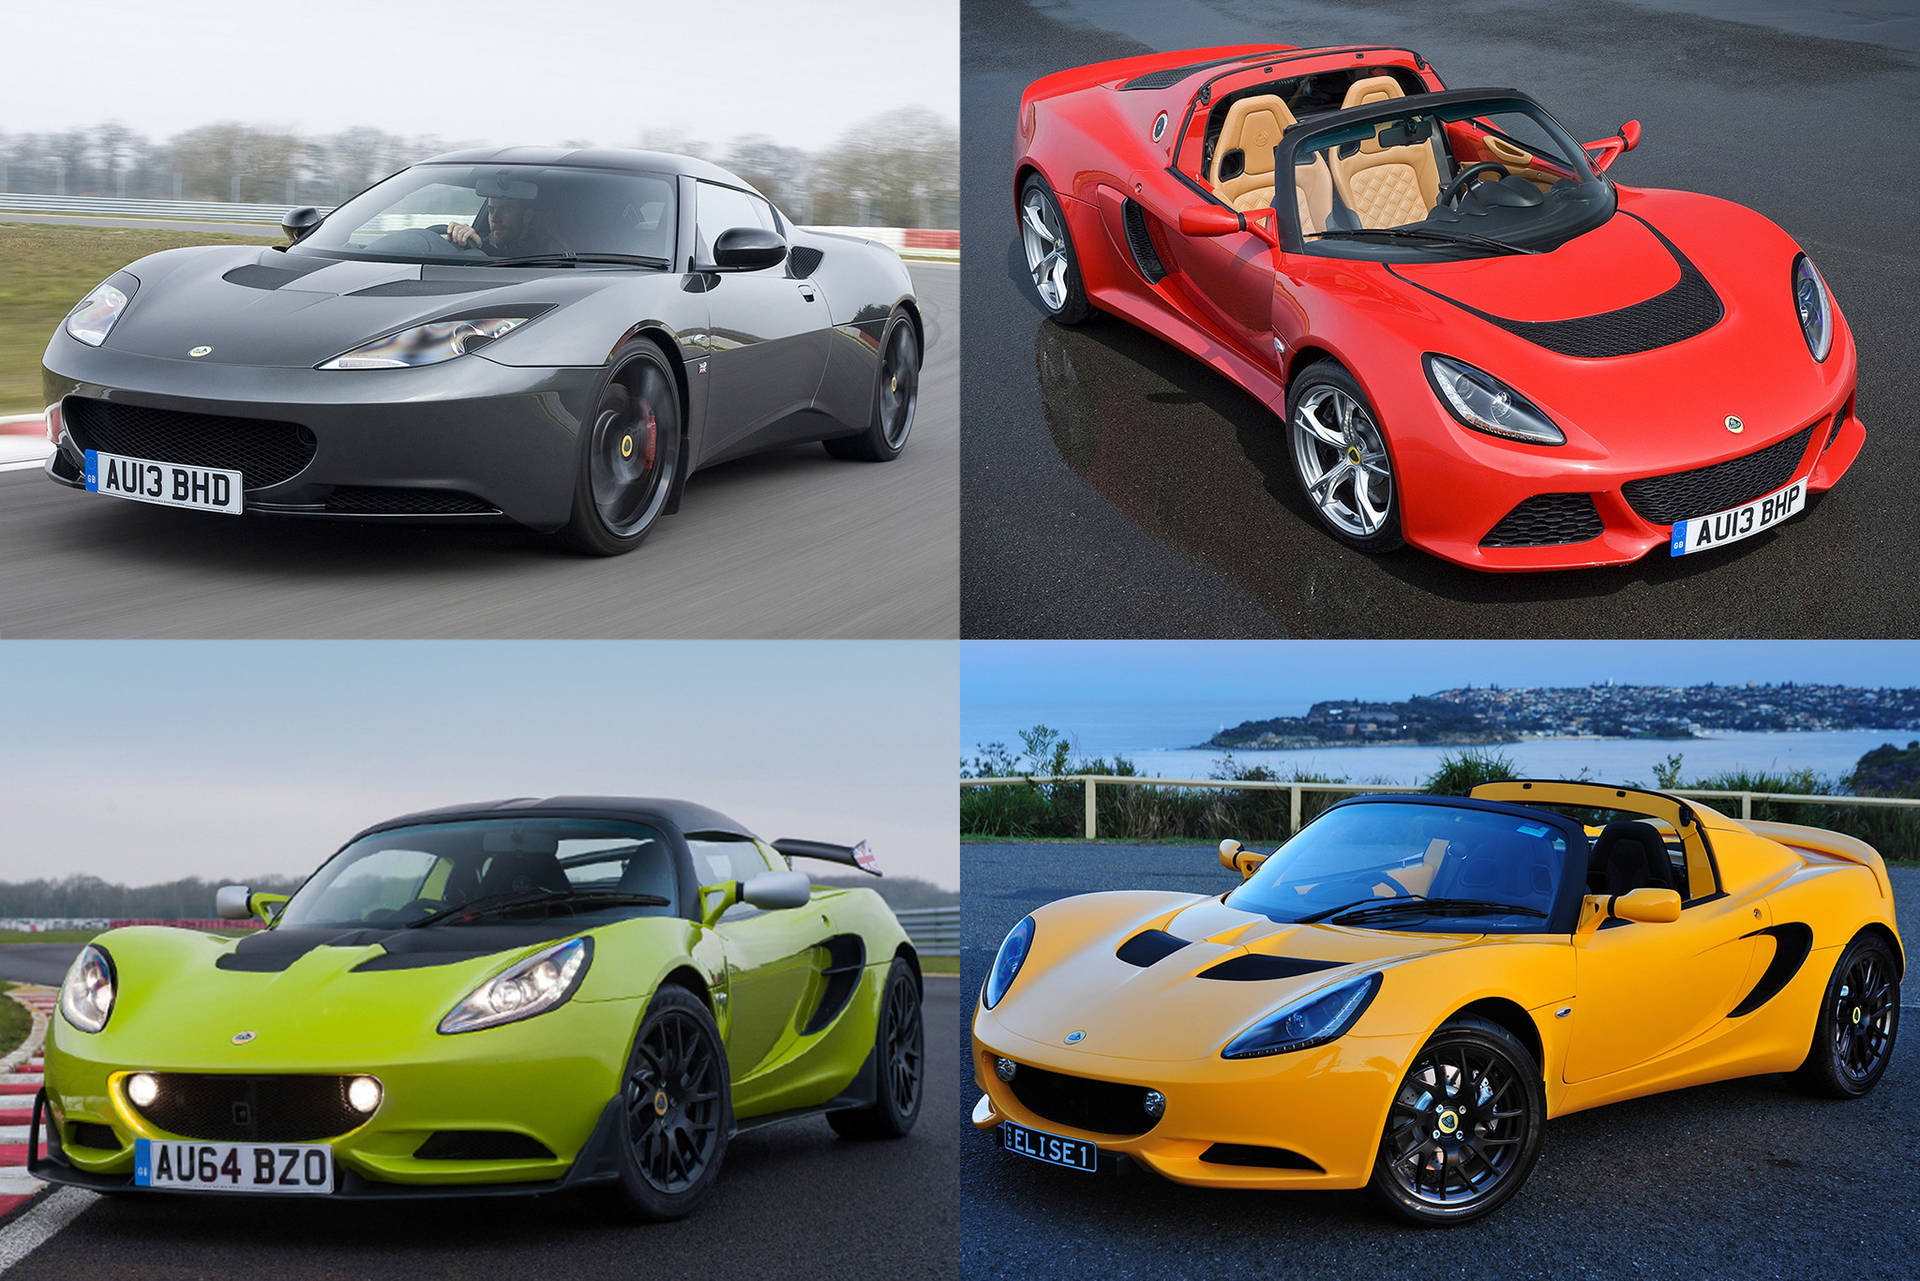 Vis billeder af Lotus-biler Wallpaper